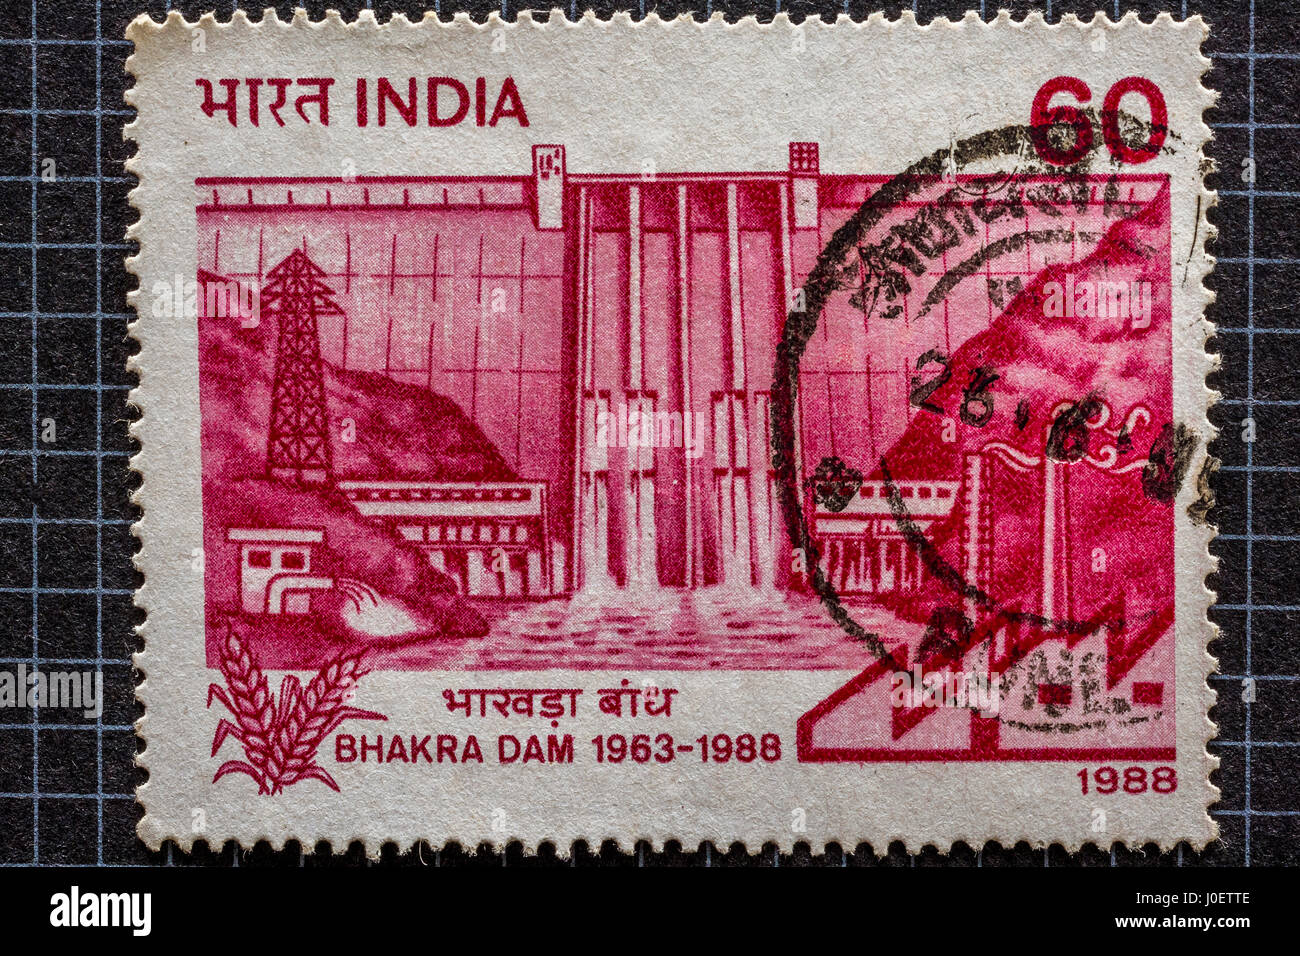 Bhakra dam, postage stamps, india, asia Stock Photo